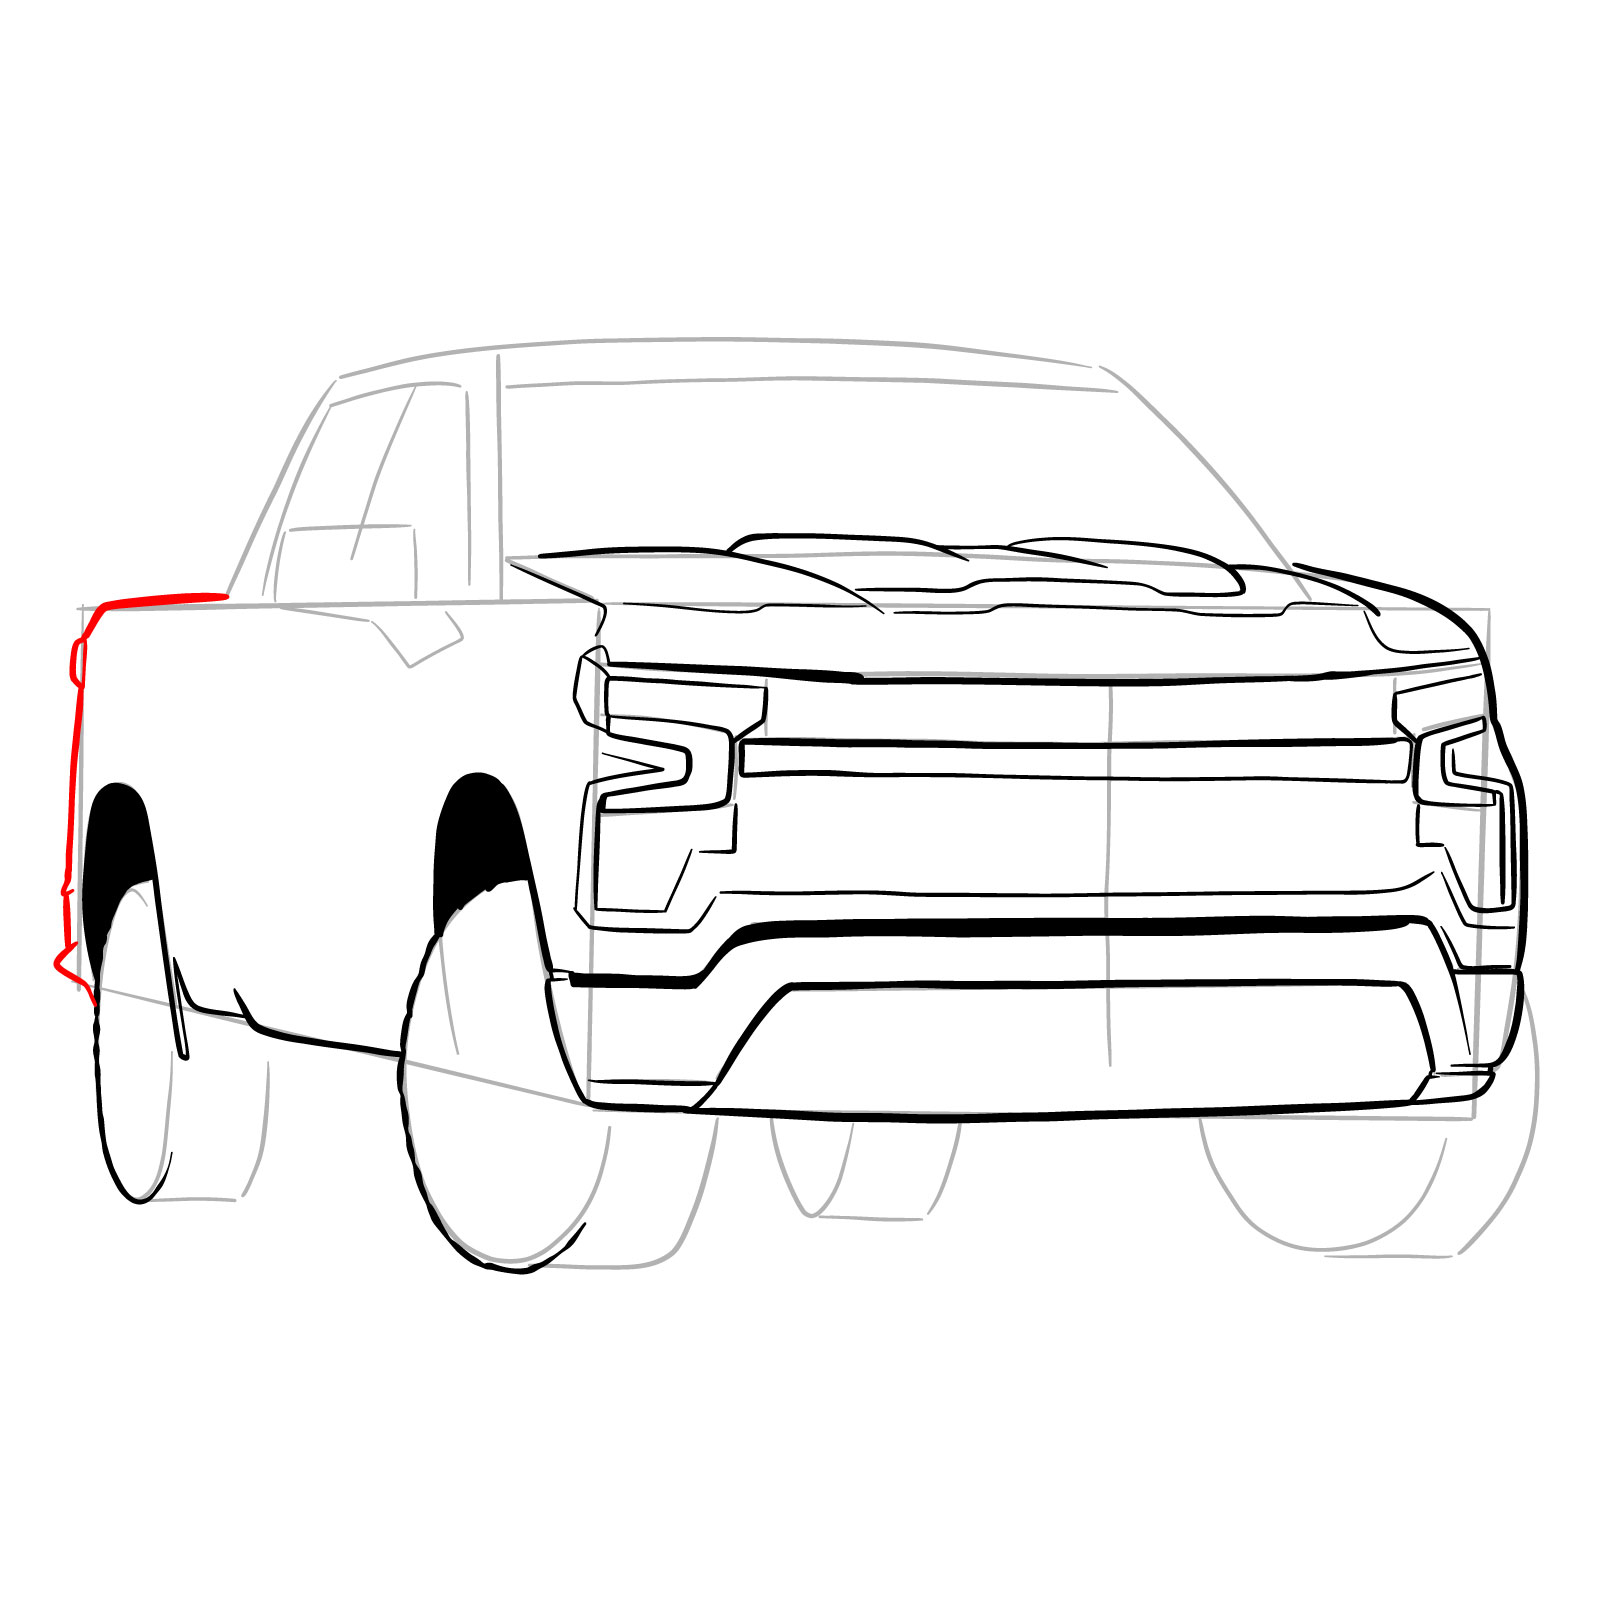 How to draw a 2022 Chevy Silverado - step 19